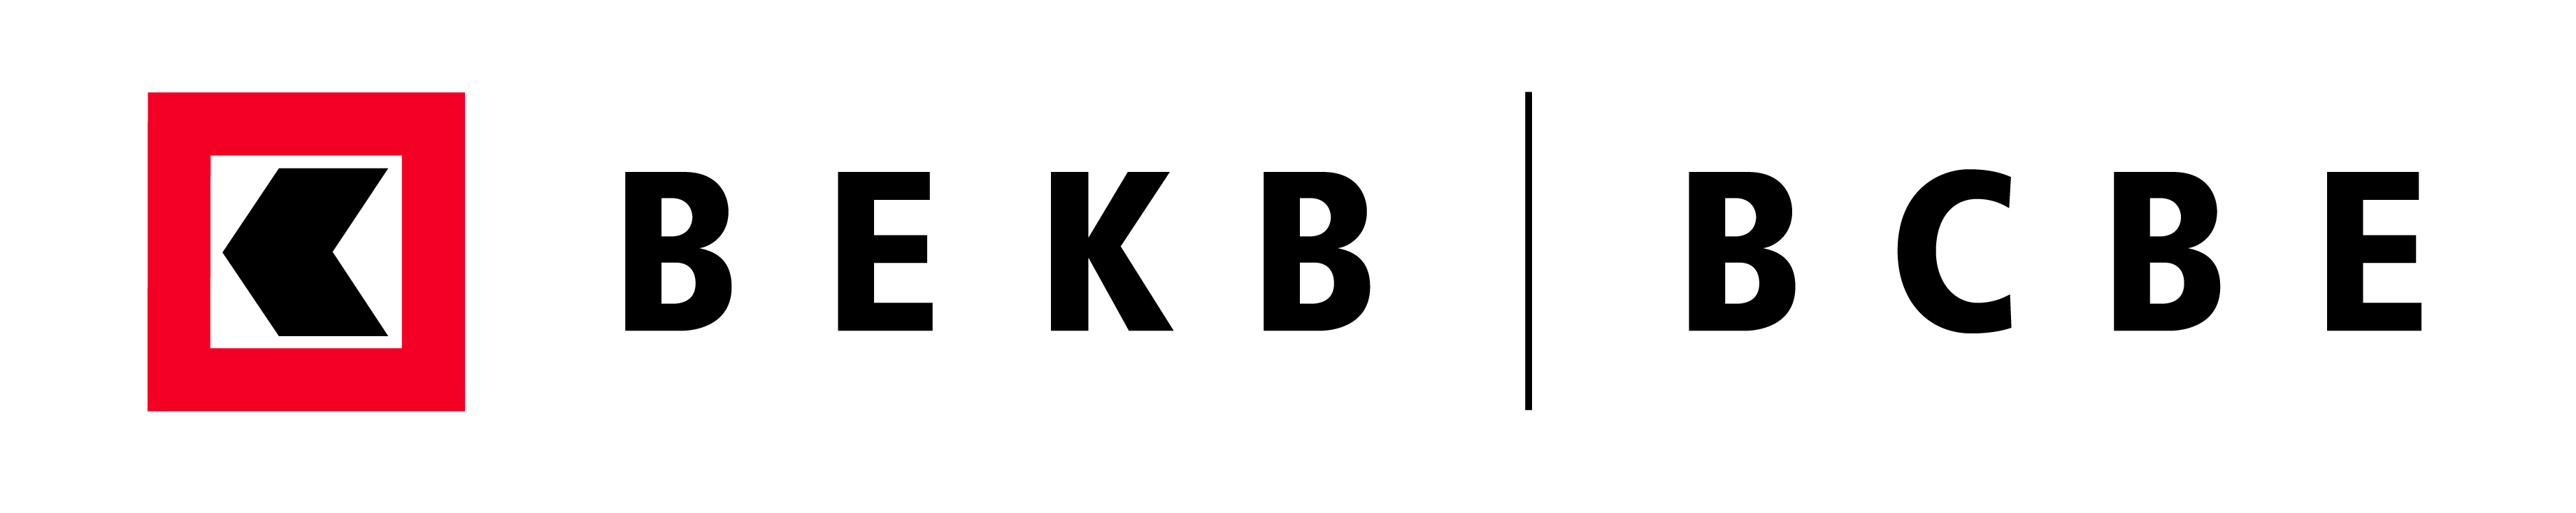 Logo BEKB_4C_D.F.jpg